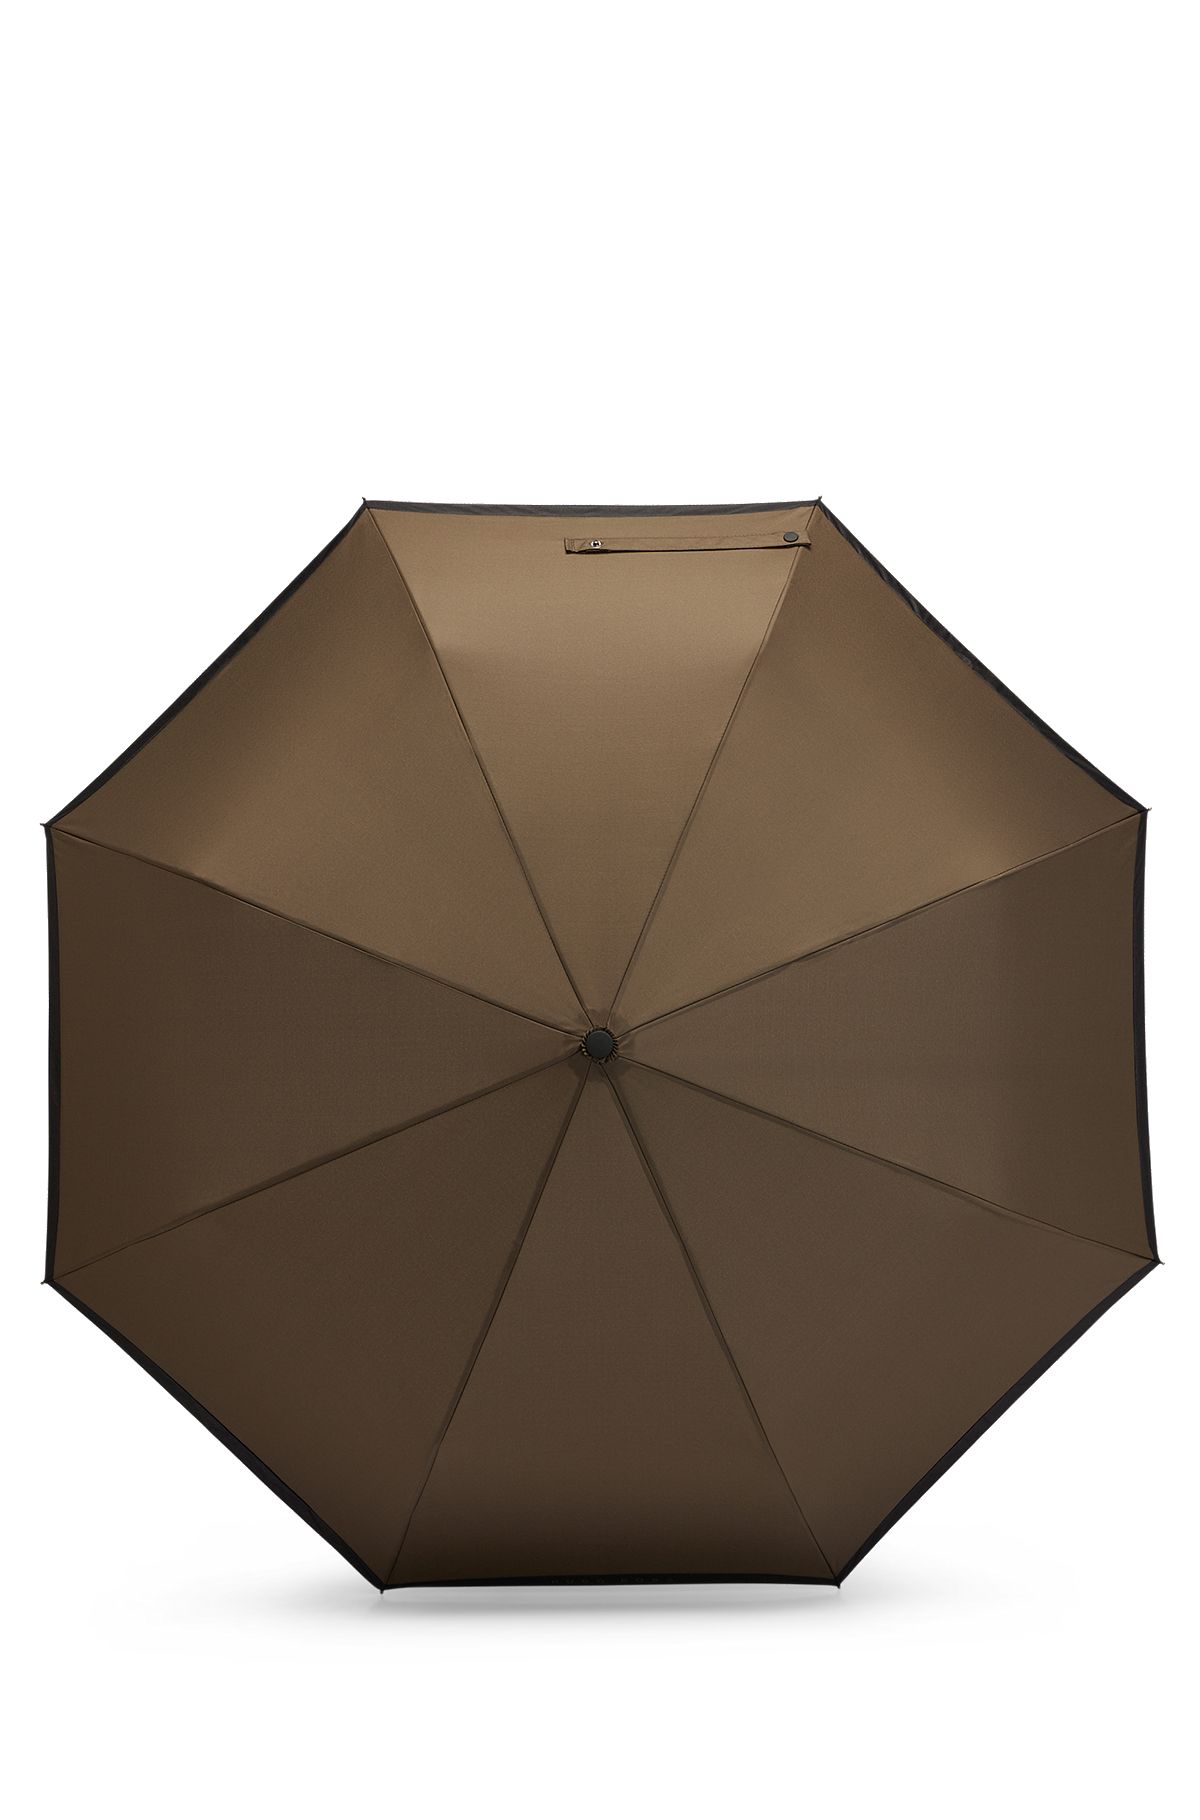 Lommeparaply i khaki med sort kant, Kaki